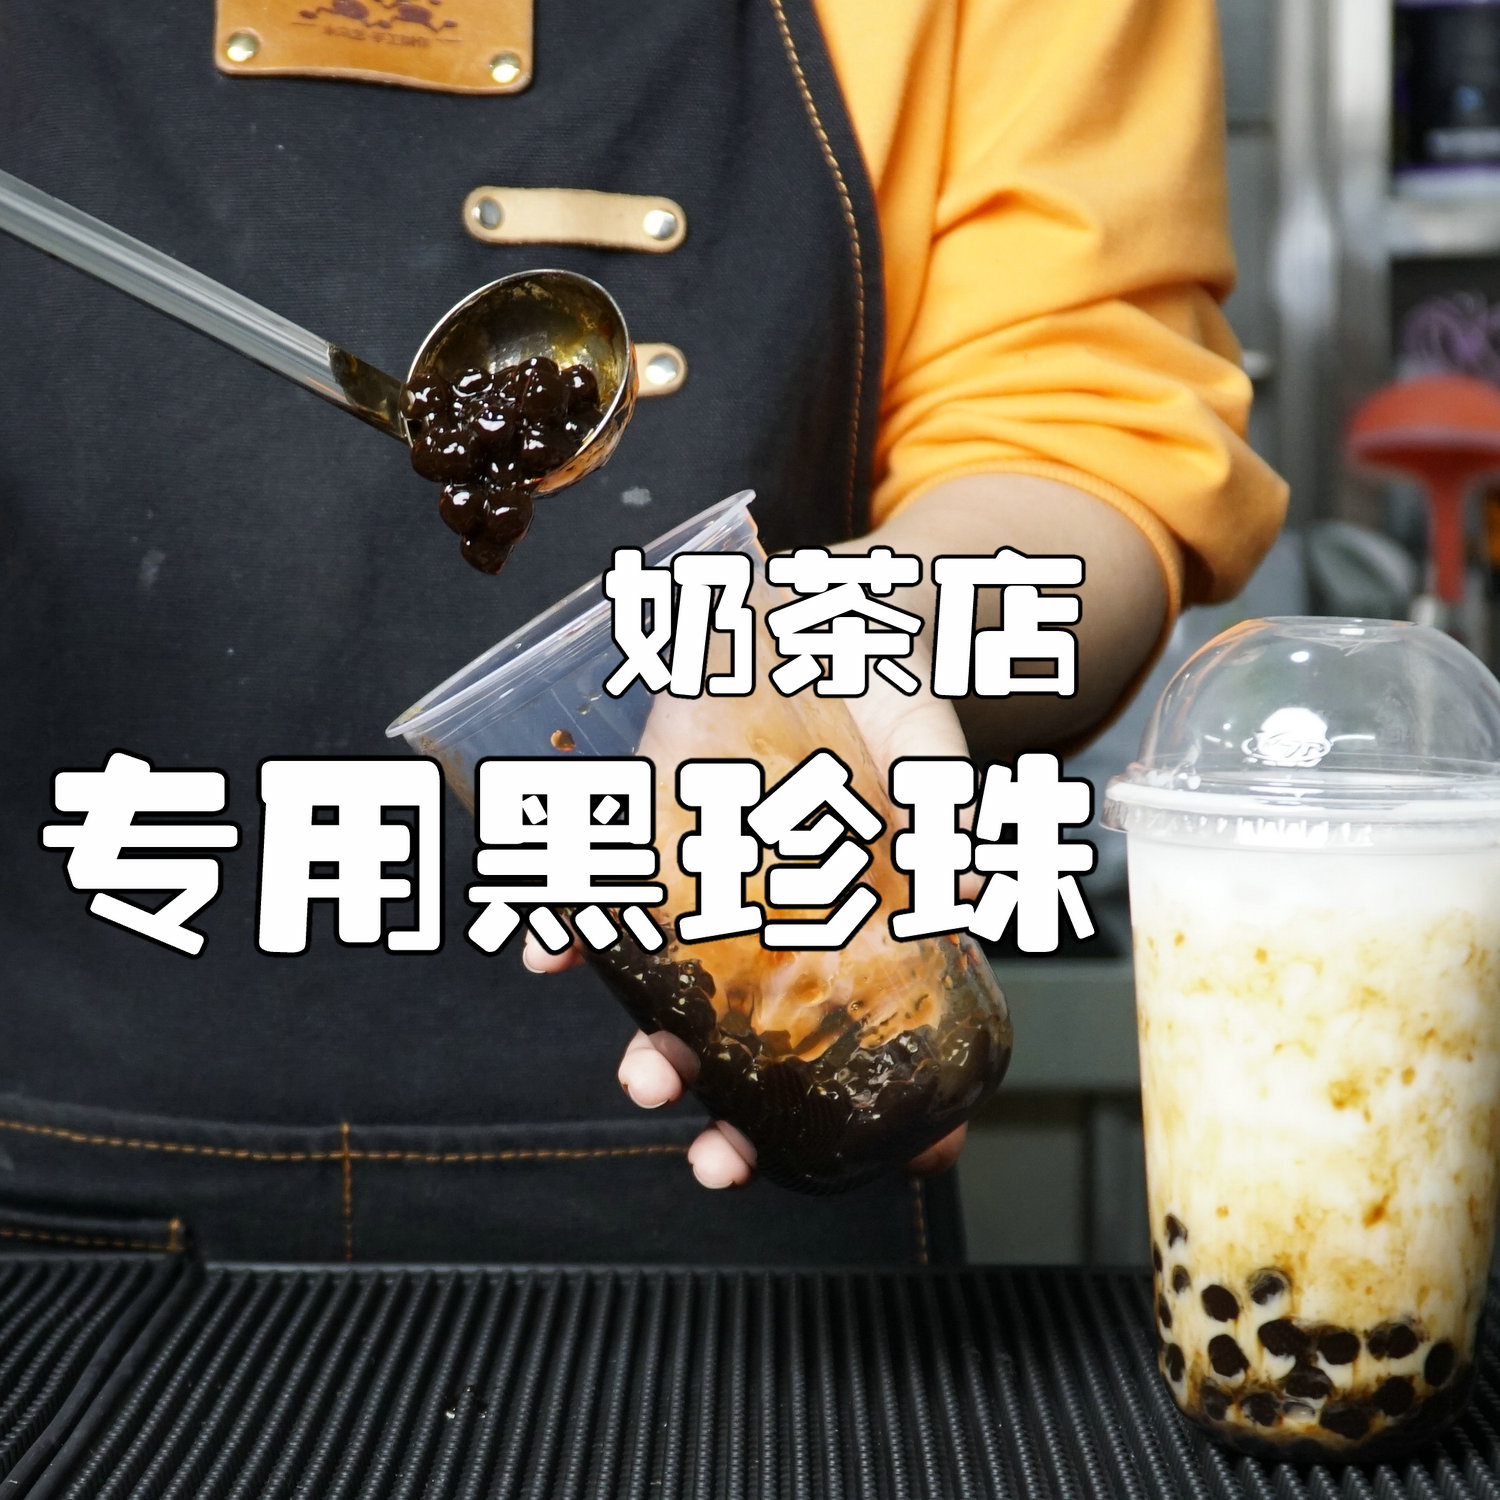 珍珠奶茶黑珍珠奶茶店专用原材料黑糖鹿丸脏脏茶配料台湾波霸粉圆